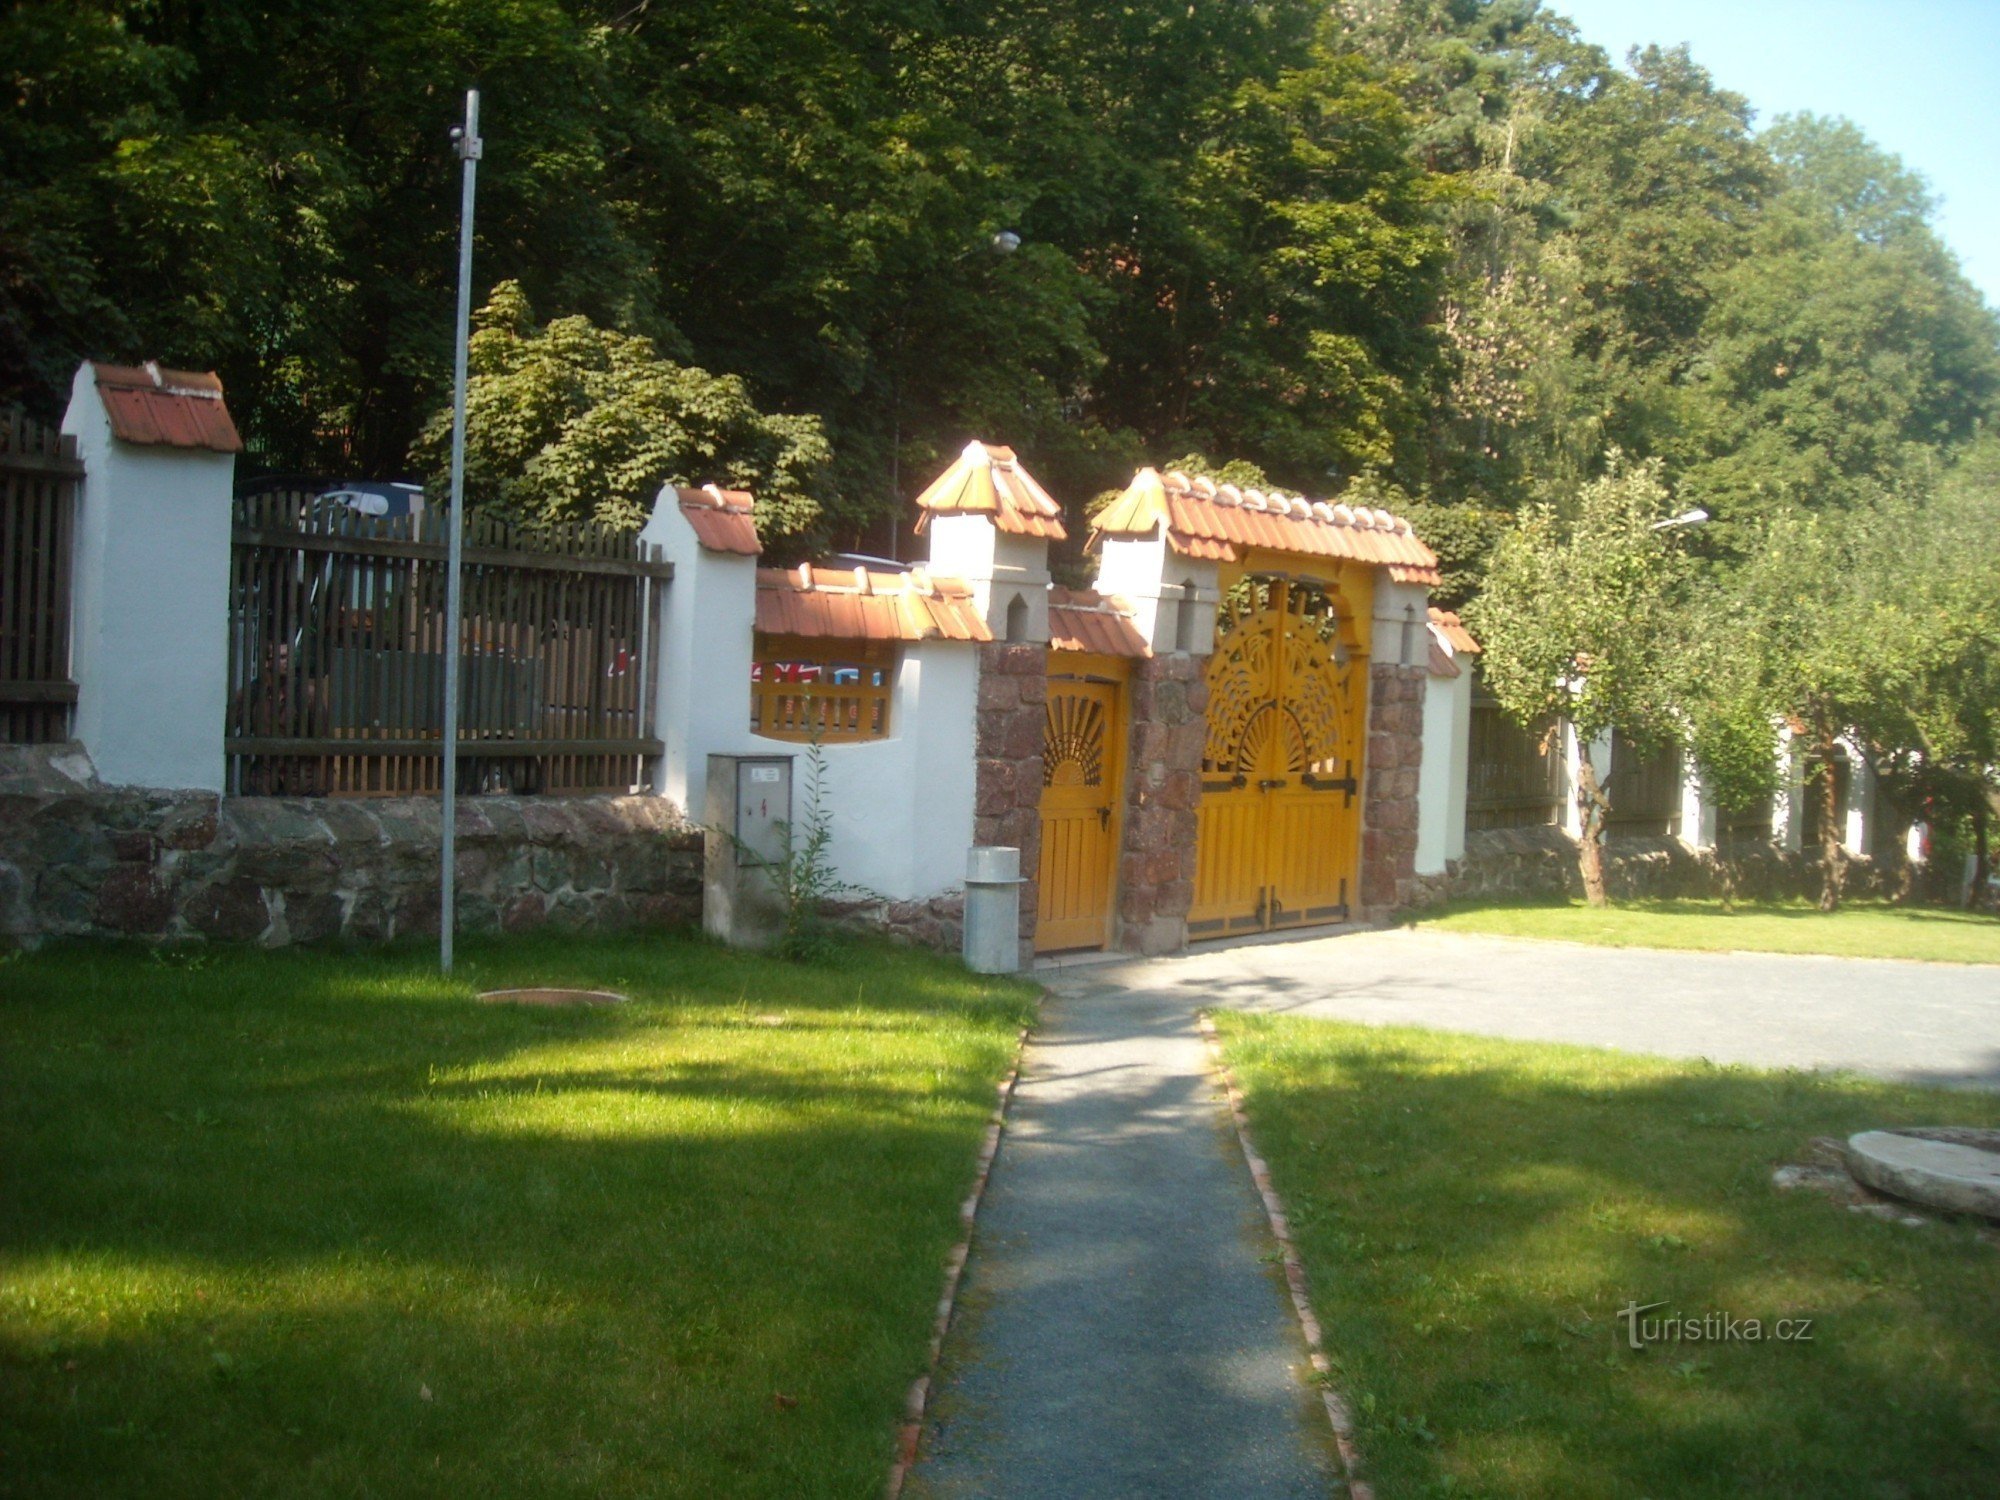 Jurkovič's villa garden